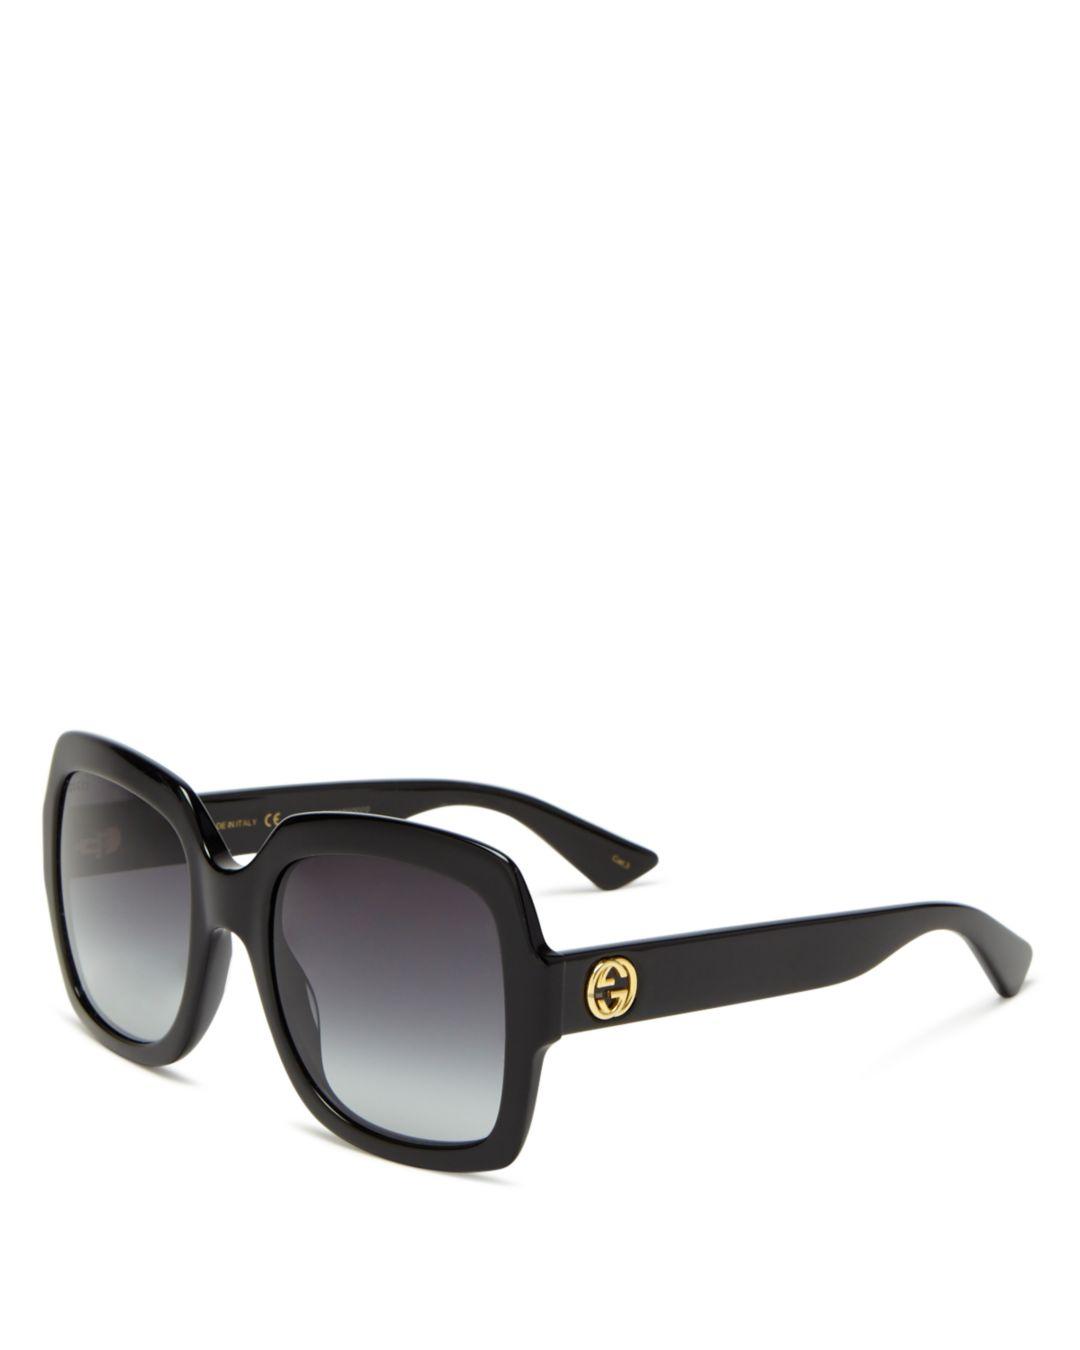 Gucci Women's Oversized Gradient Square Sunglasses in Black - Save 52% ...